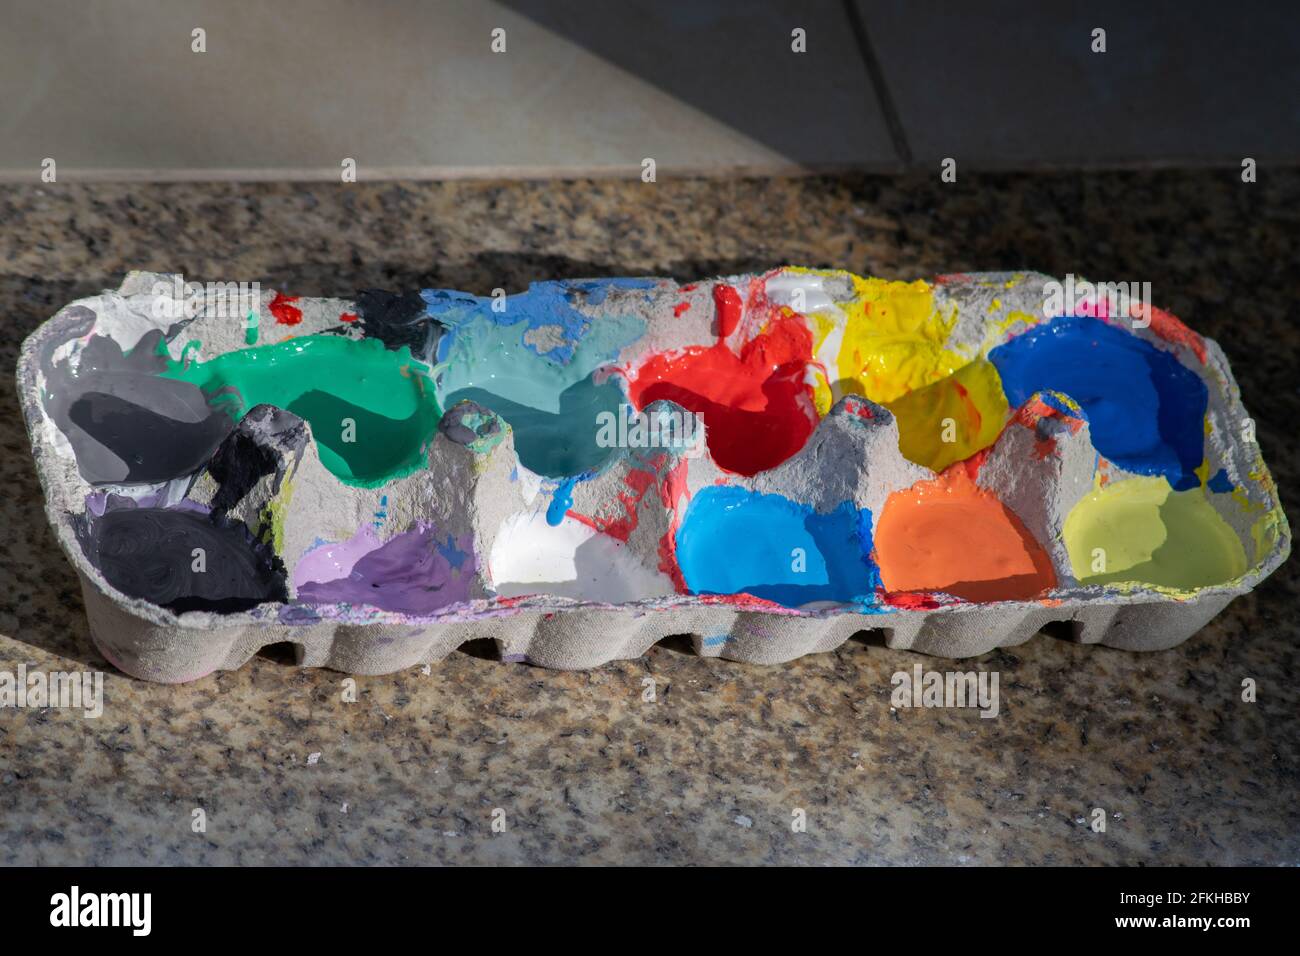 Eier Box mit verschiedenen Farben für Kinder in künstlerischen verwenden Ausdrücke Stockfoto